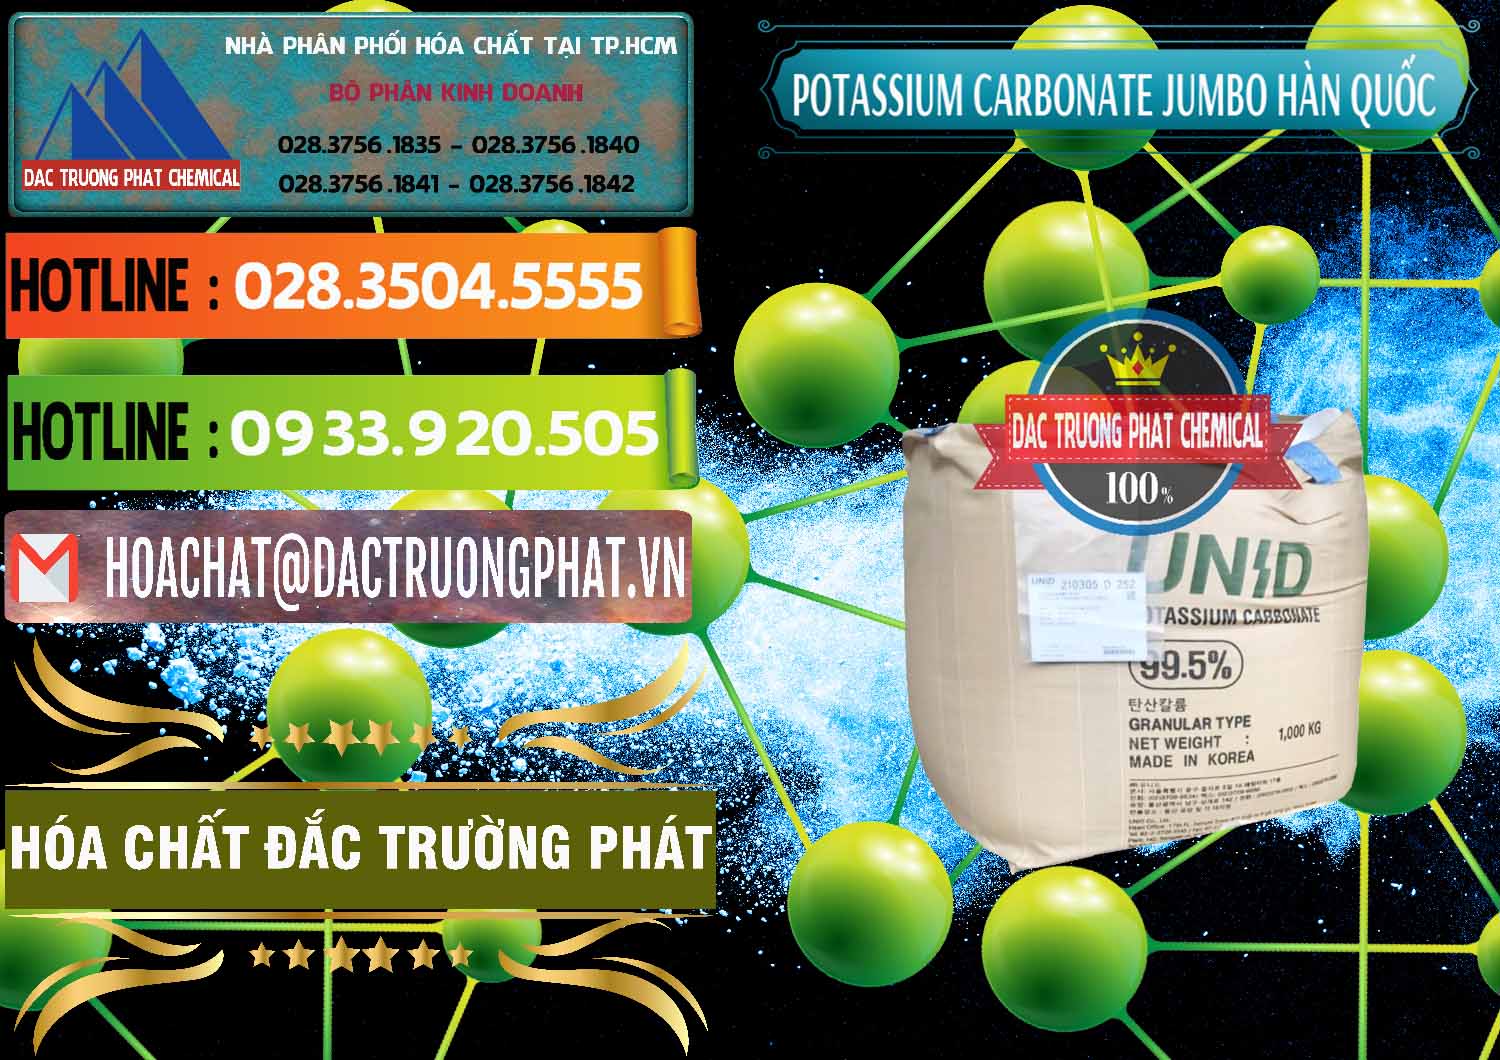 Chuyên bán ( cung cấp ) K2Co3 – Potassium Carbonate Jumbo Bành Unid Hàn Quốc Korea - 0434 - Kinh doanh - phân phối hóa chất tại TP.HCM - cungcaphoachat.com.vn